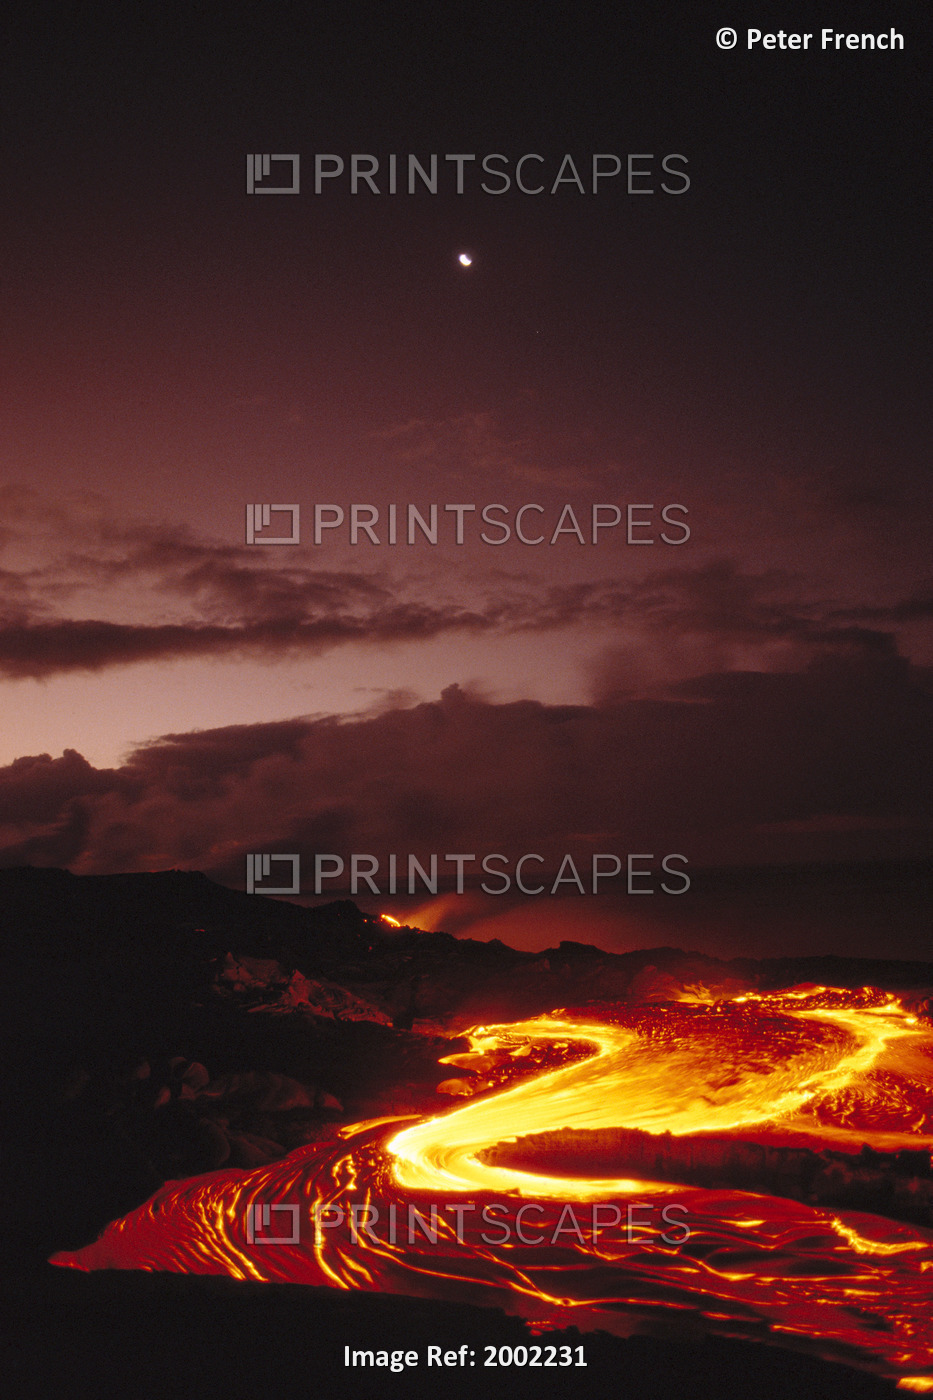 Hawaii, Big Island, Hawaii Volcanoes National Park, Moon Over Lava Flow At Dawn